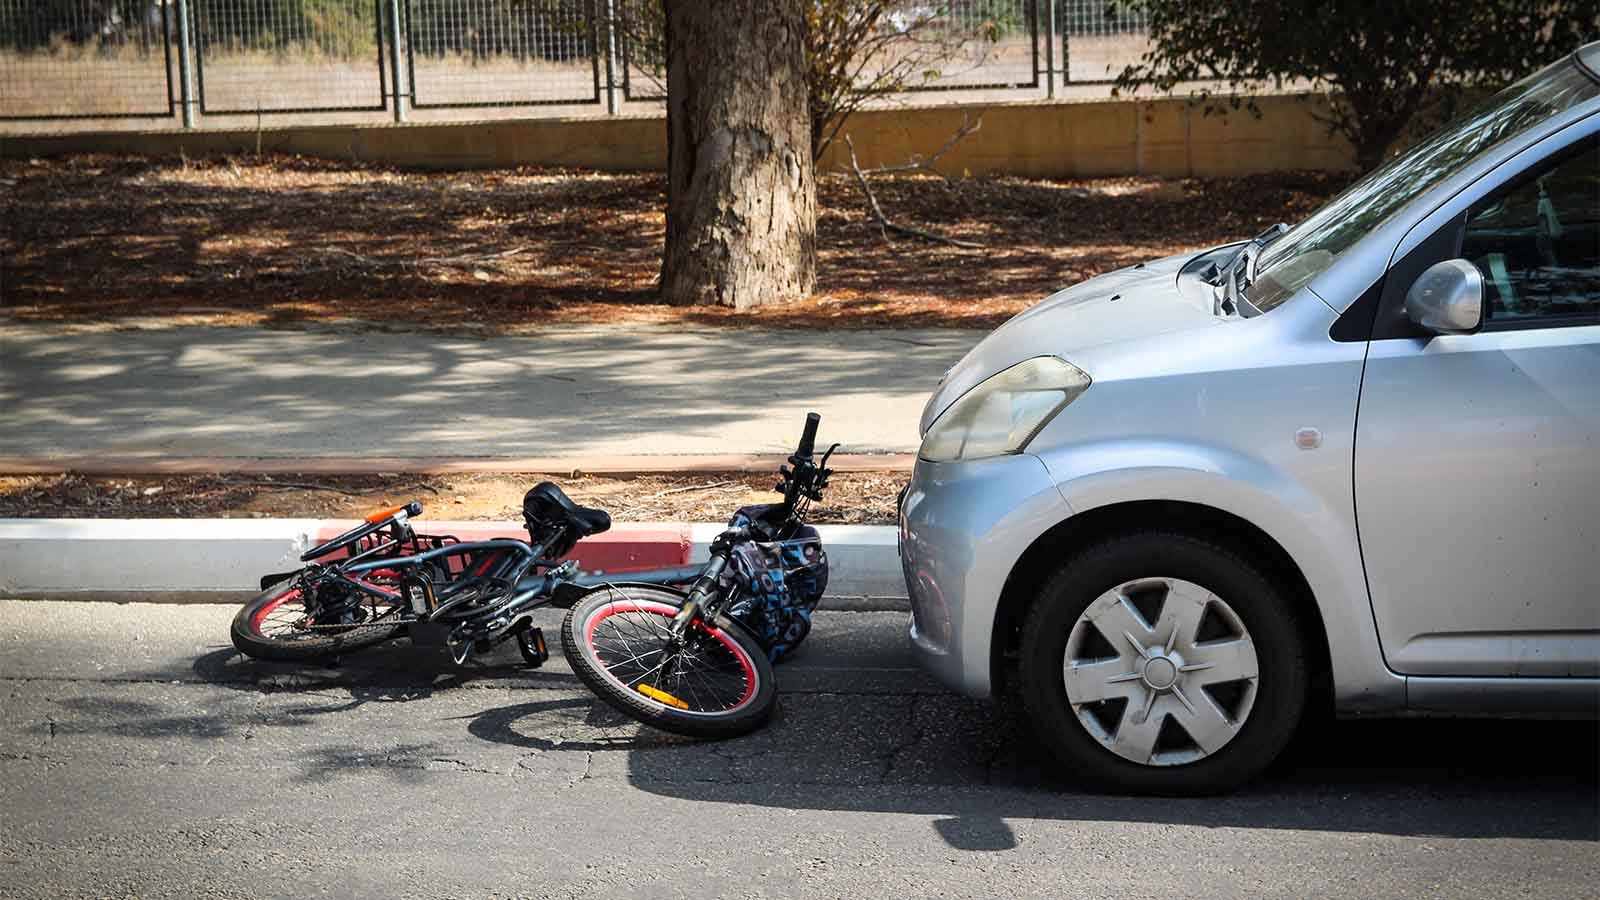 תאונה בין אופניים חשמליים לרכב. אילוסטרציה (צילום: Shutterstock)